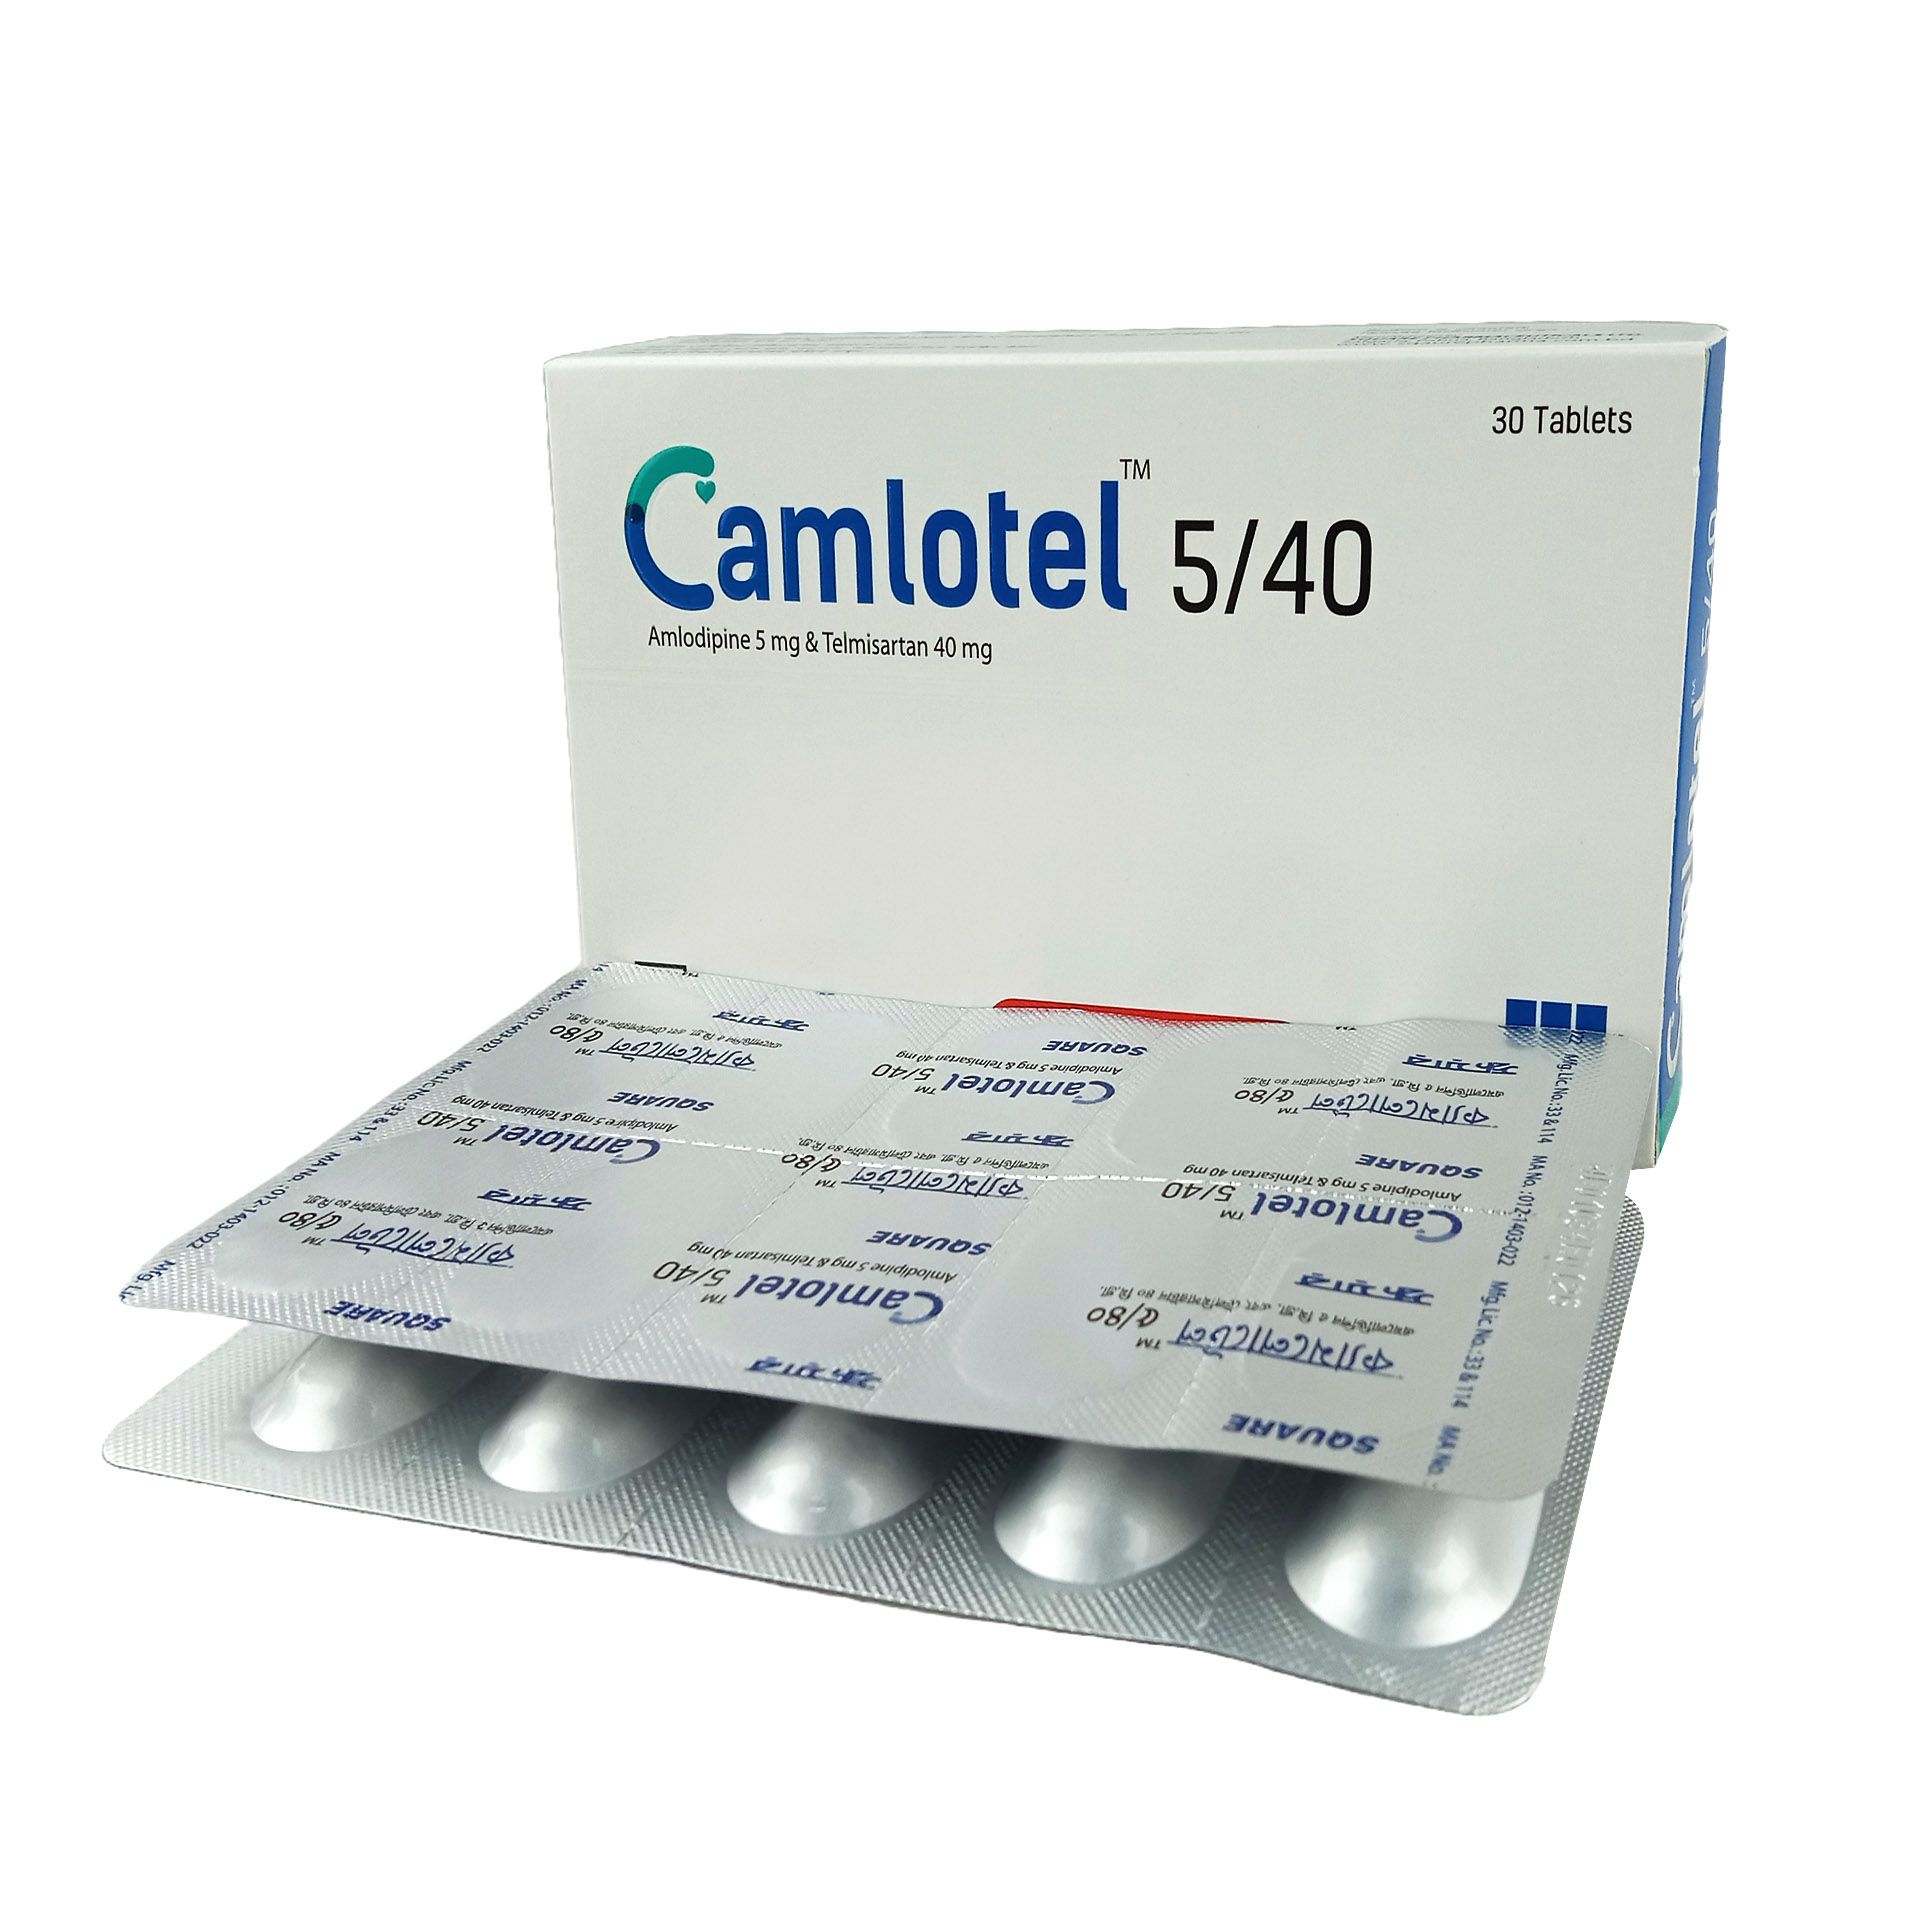 Camlotel 5/40 5mg+40mg Tablet